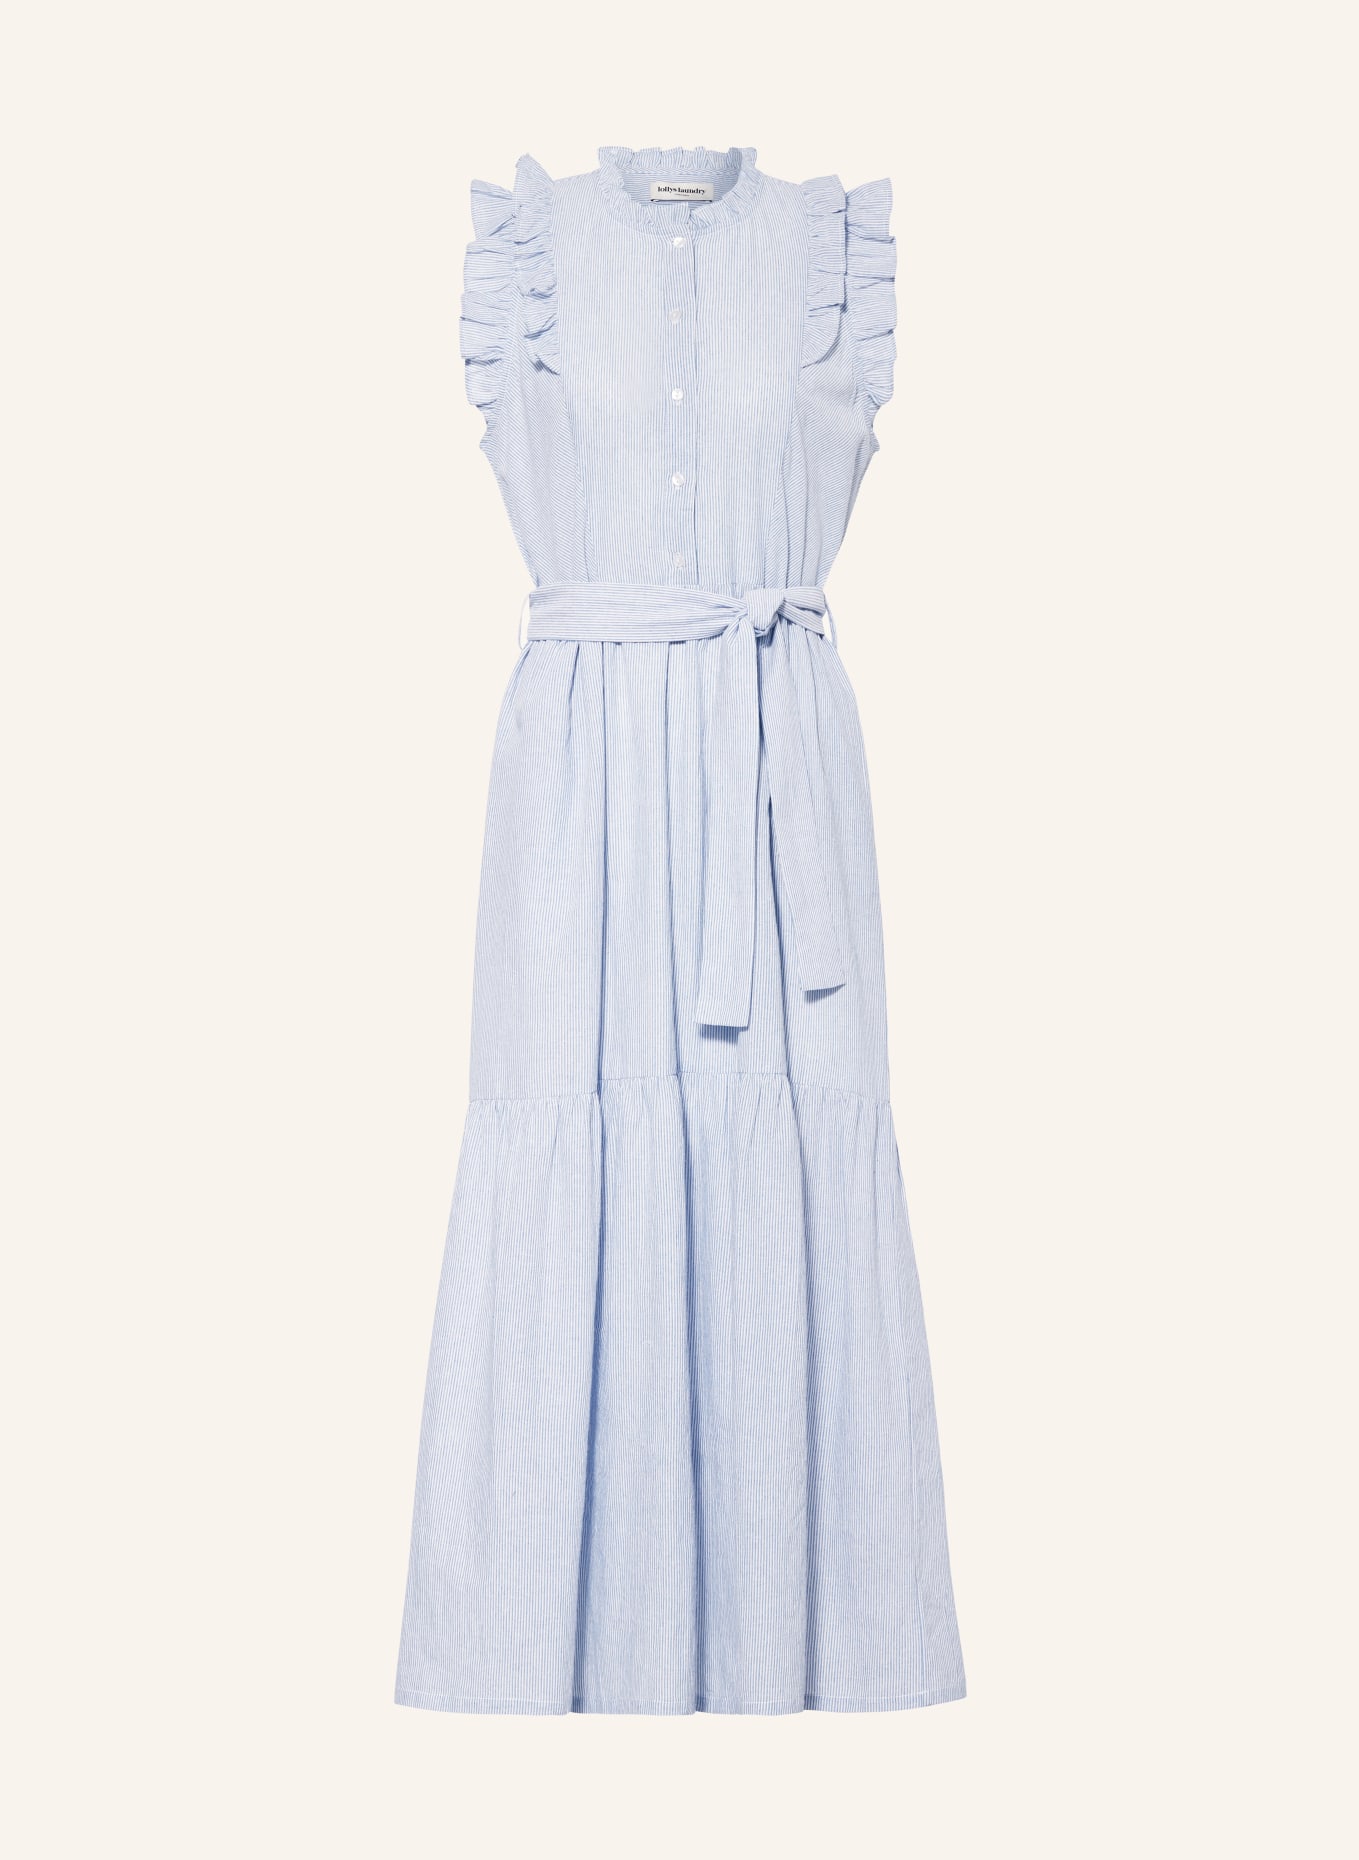 lollys laundry Kleid HARRIETLL mit Rüschen, Farbe: HELLBLAU/ WEISS (Bild 1)